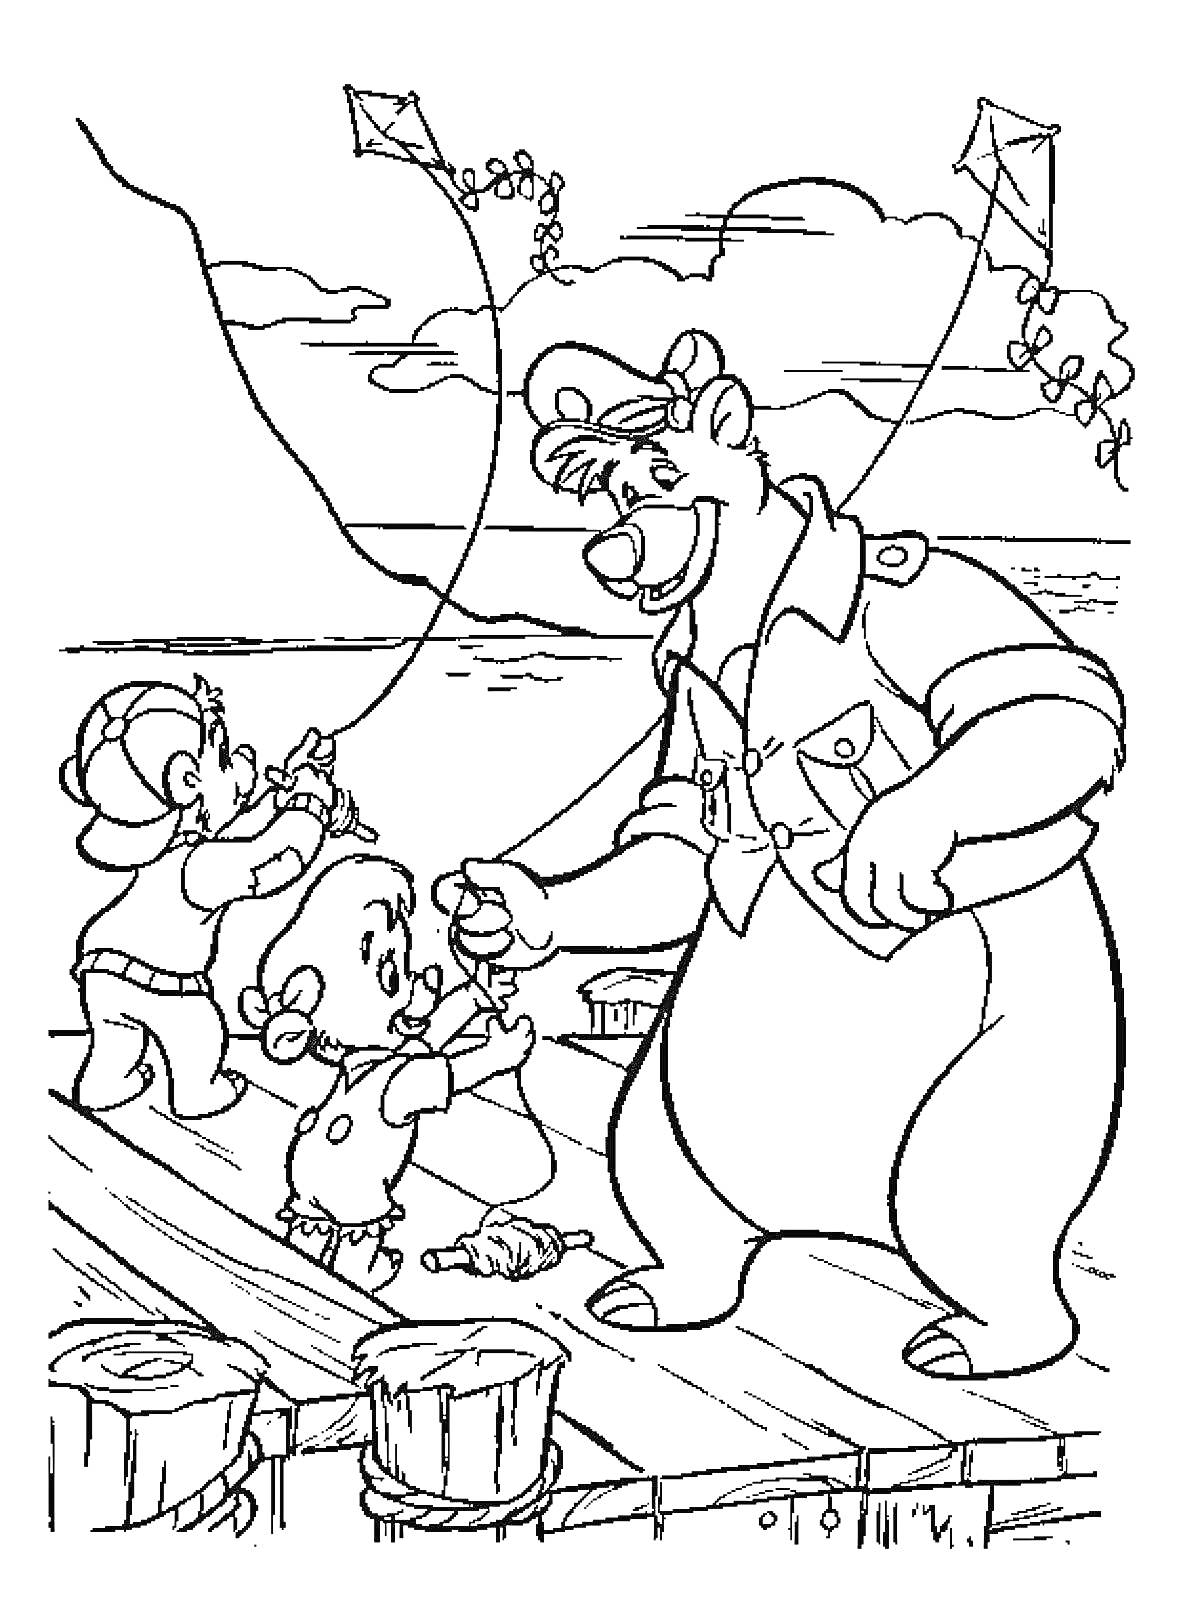 Медведь и два малыша запускают воздушных змеев на пирсе